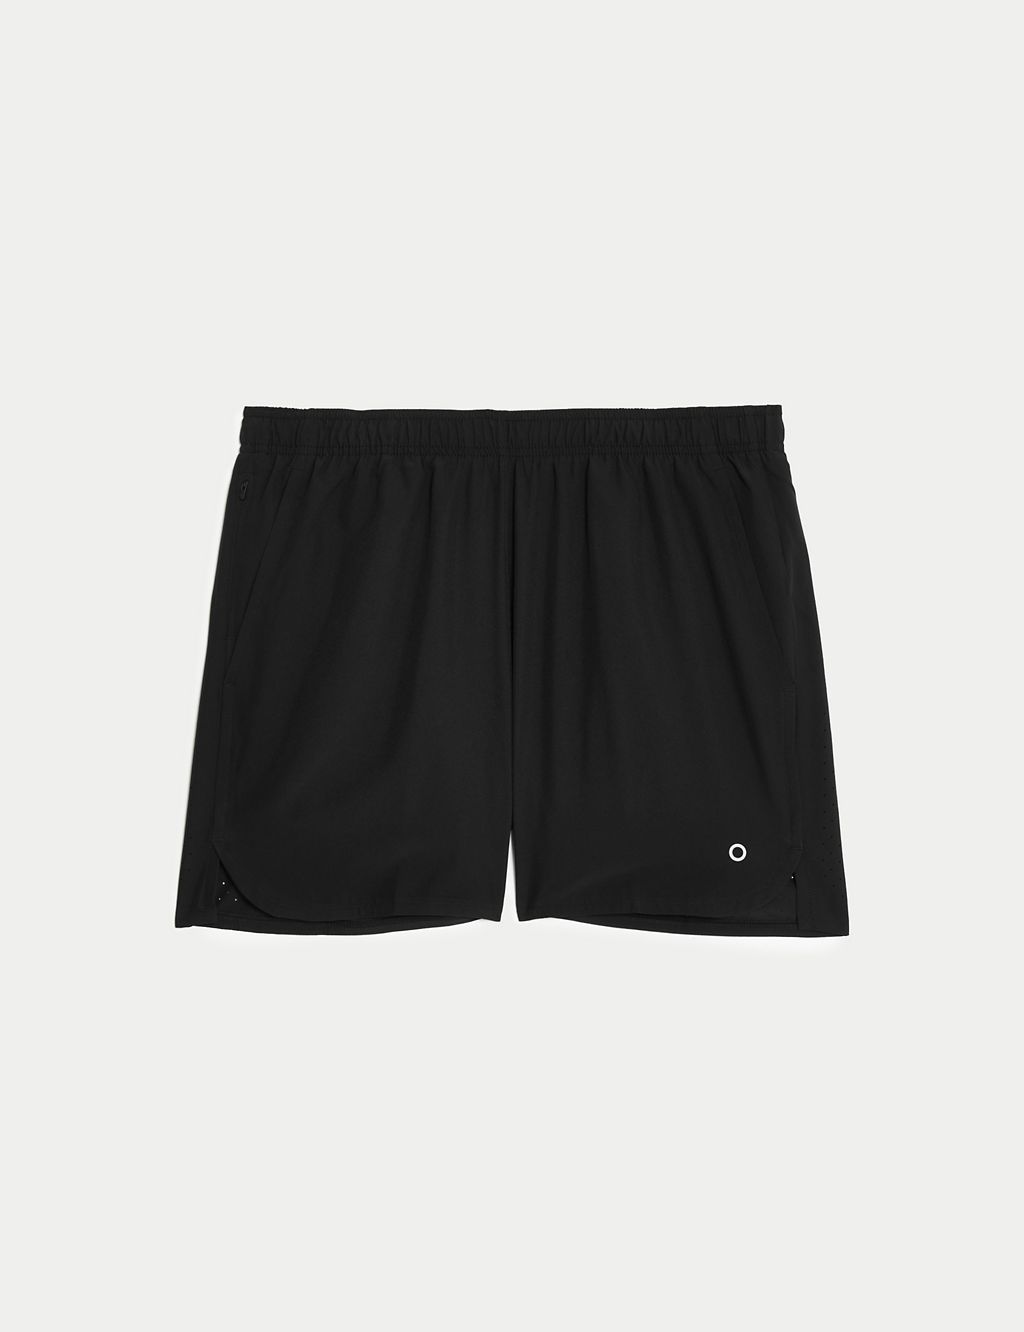 Zip Pocket Running Shorts 1 of 6